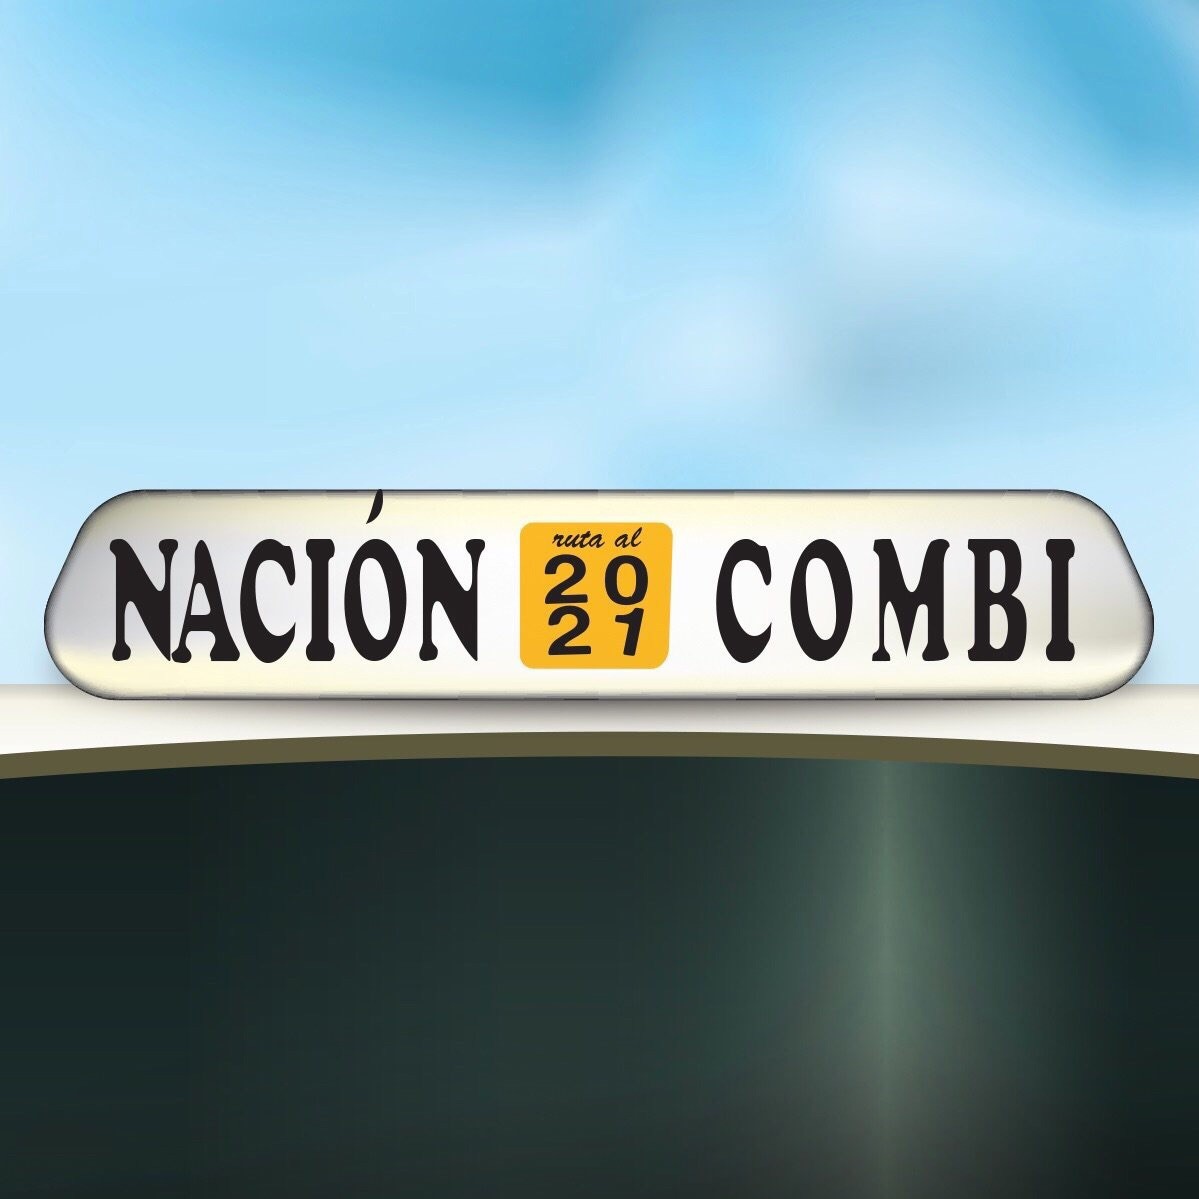 nacion-combi